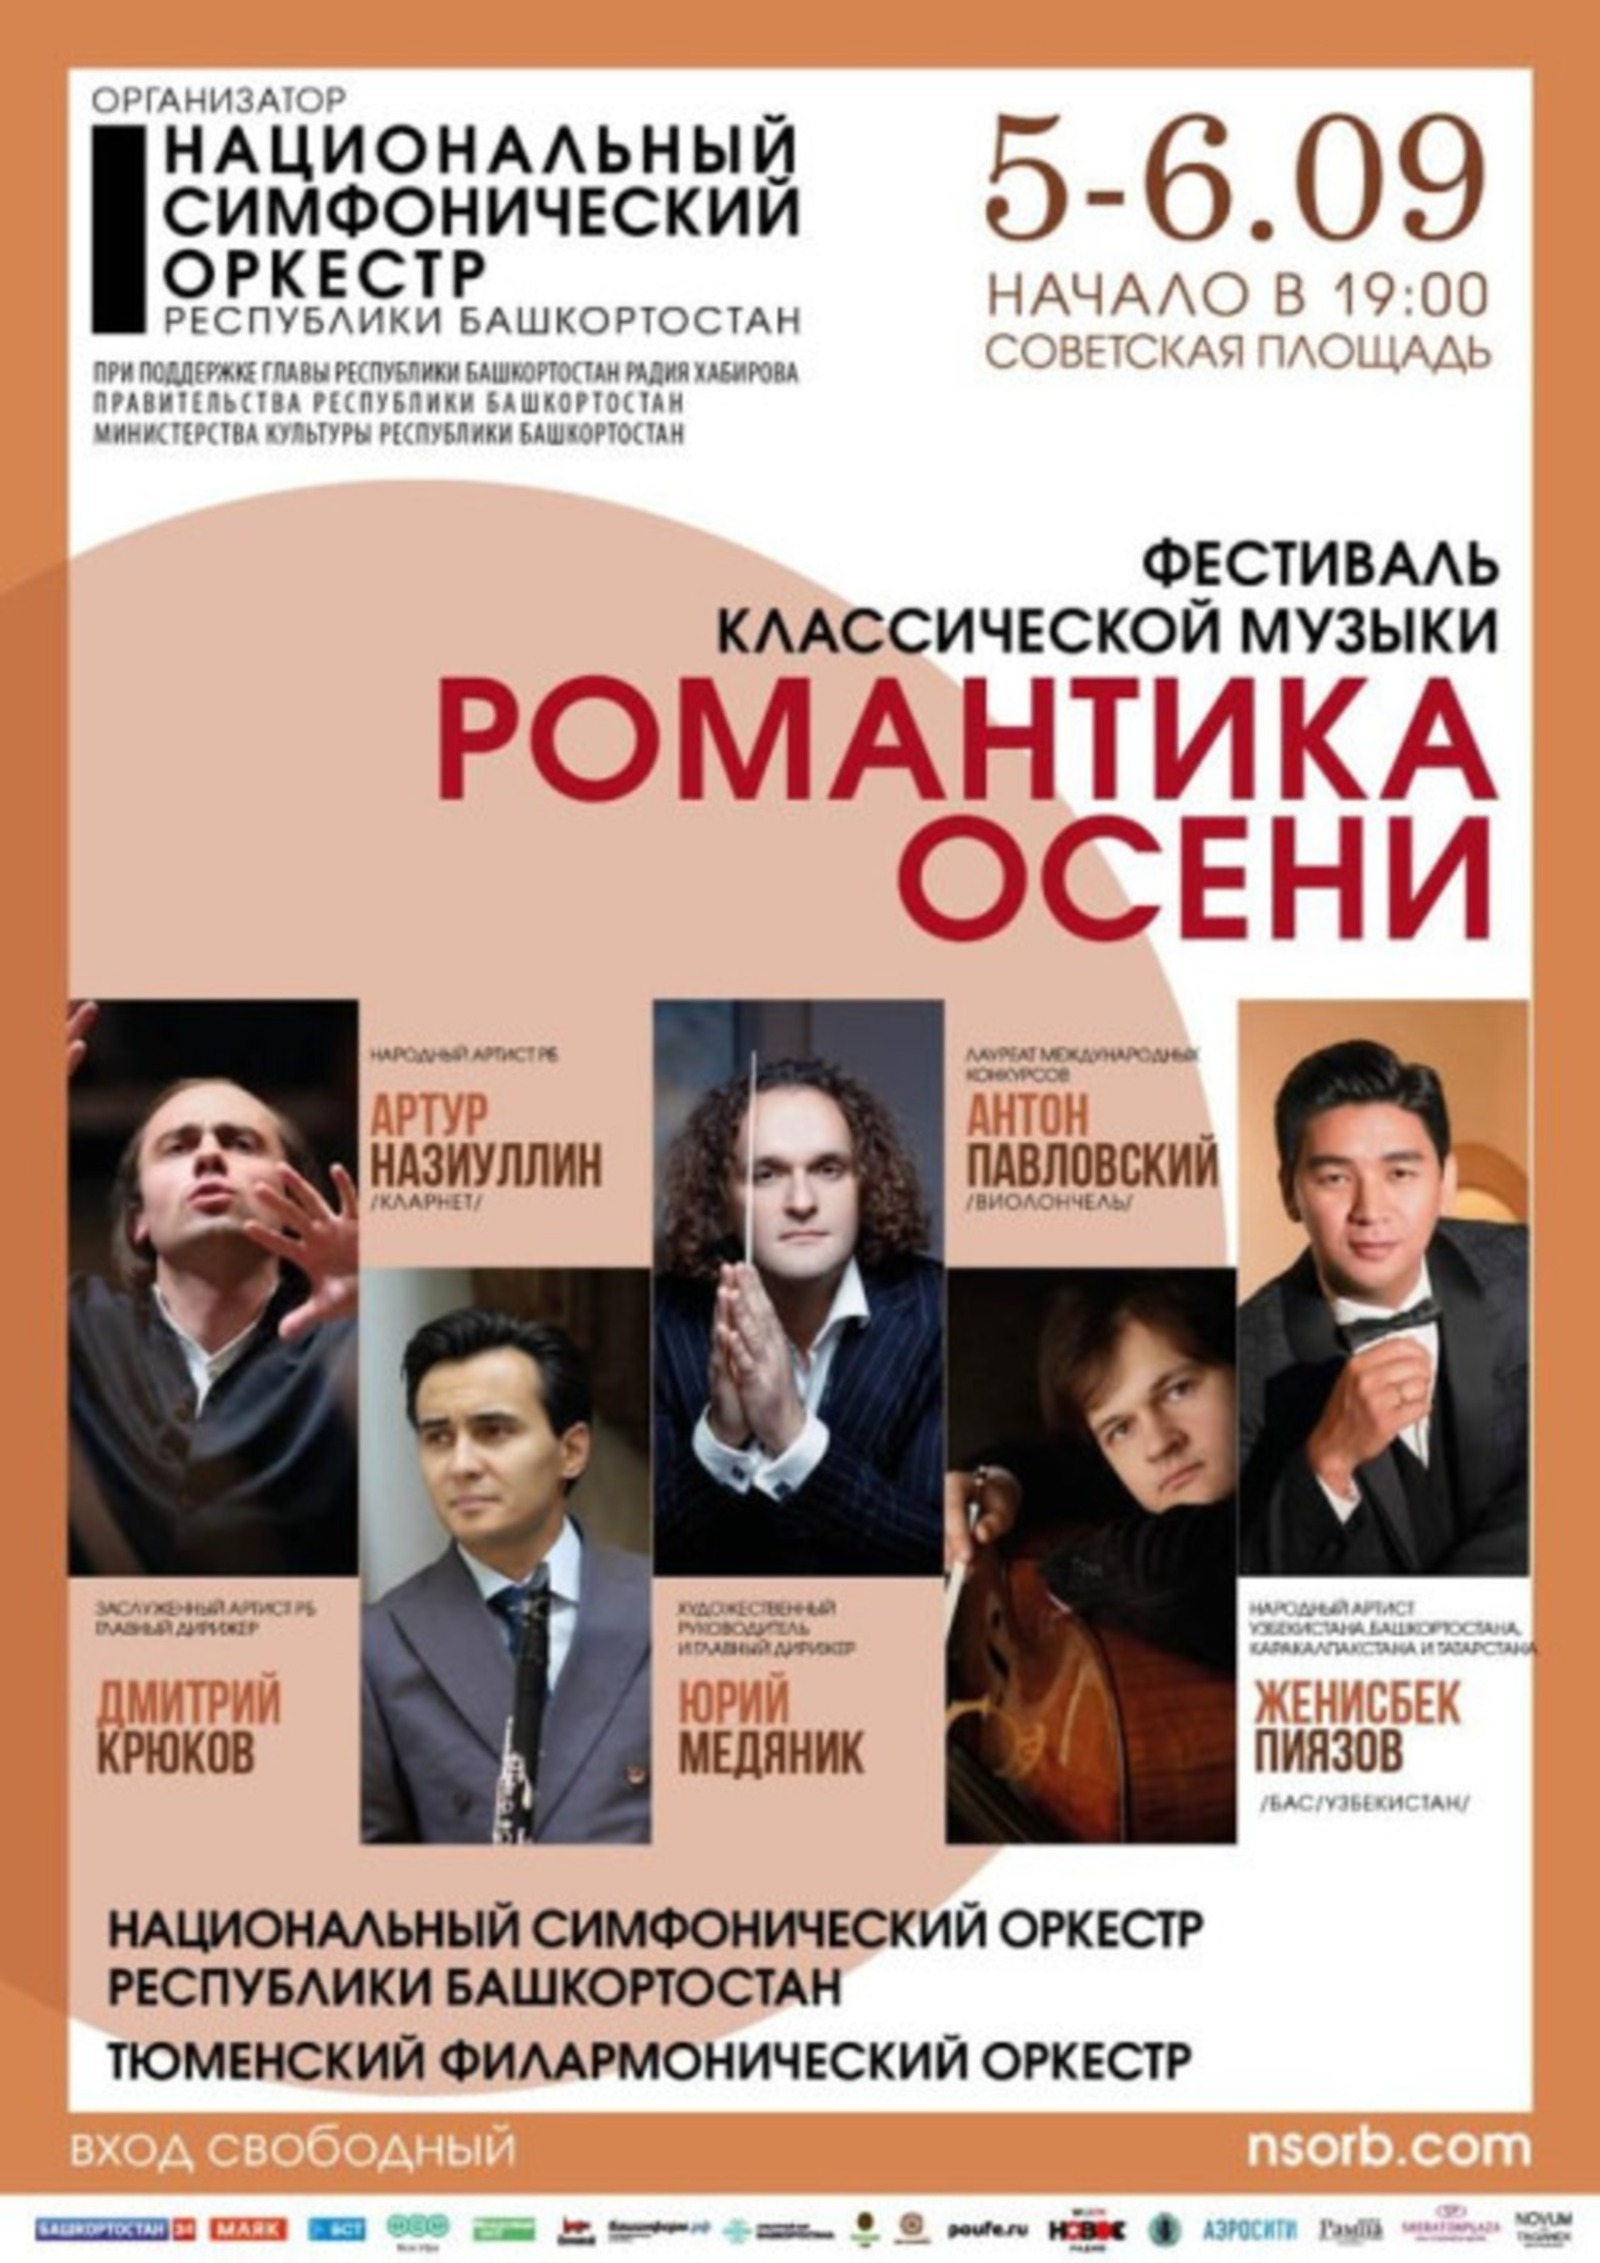 В Башкирии пройдёт всероссийский фестиваль классической музыки "Романтика осени"